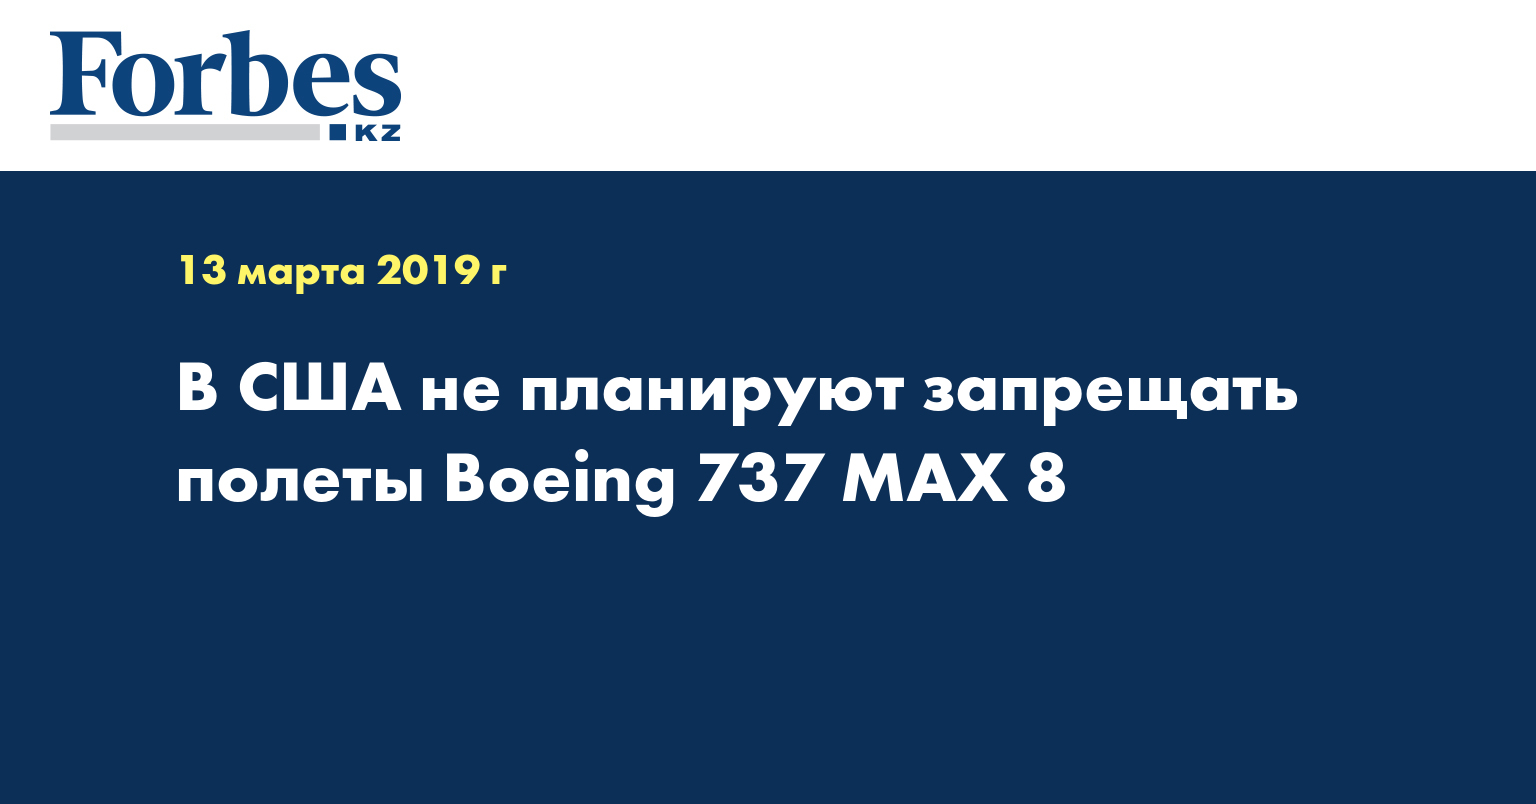  В США не планируют запрещать полеты Boeing 737 MAX 8